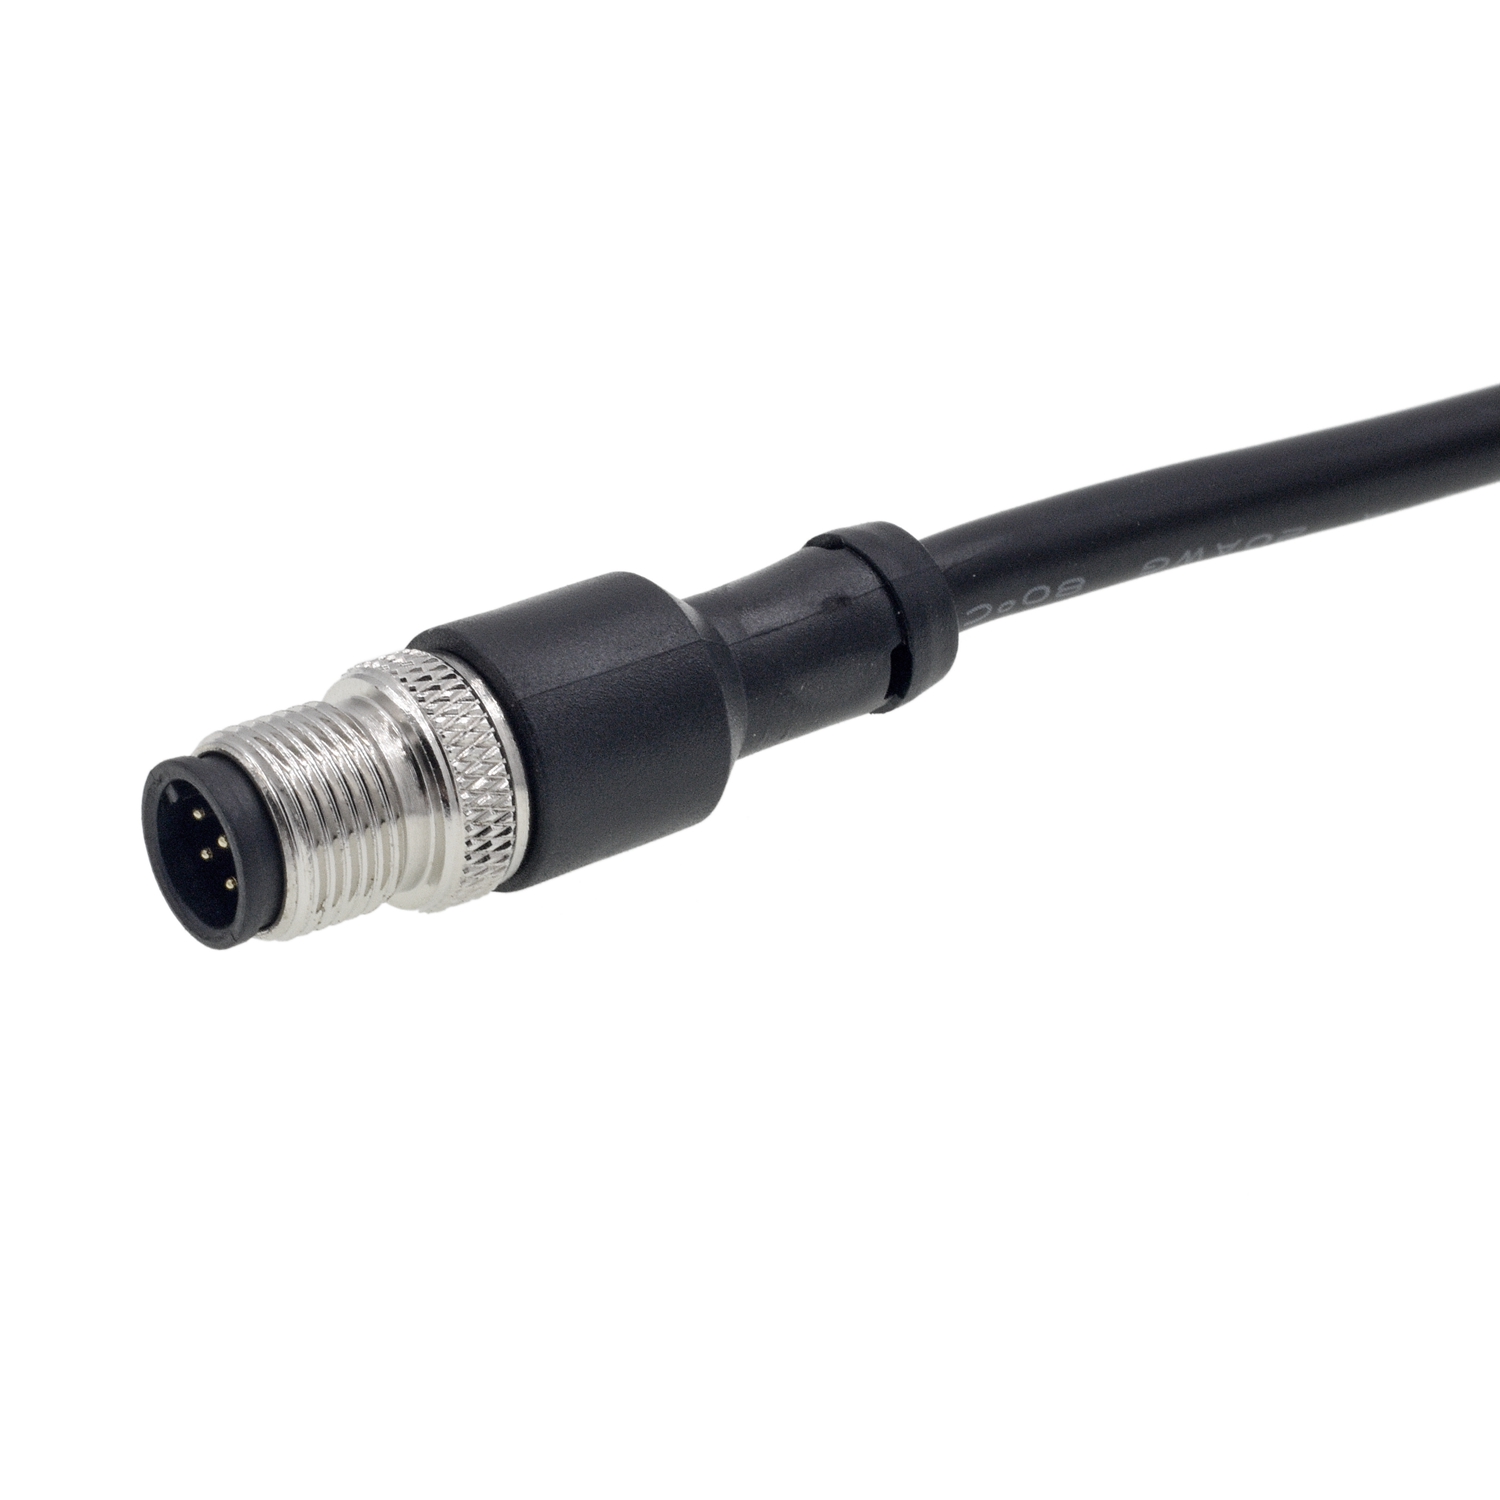 Ang DT M12 Waterproof Connector Communication Harness ng Mga Kable